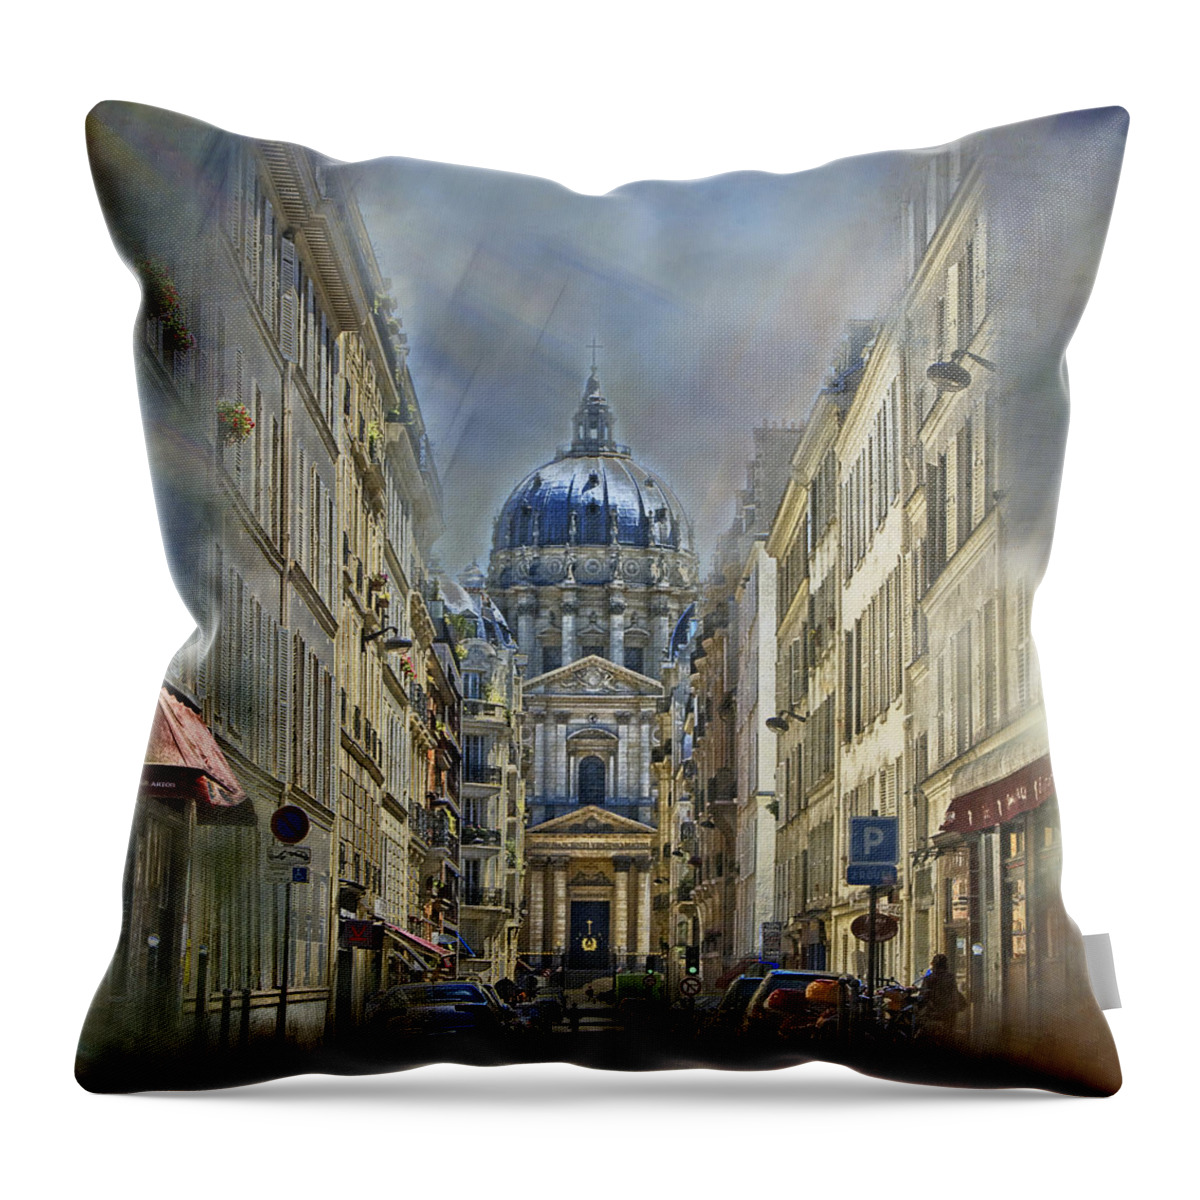 Paris Throw Pillow featuring the photograph Val-de-Grace Church, Paris by Claude LeTien